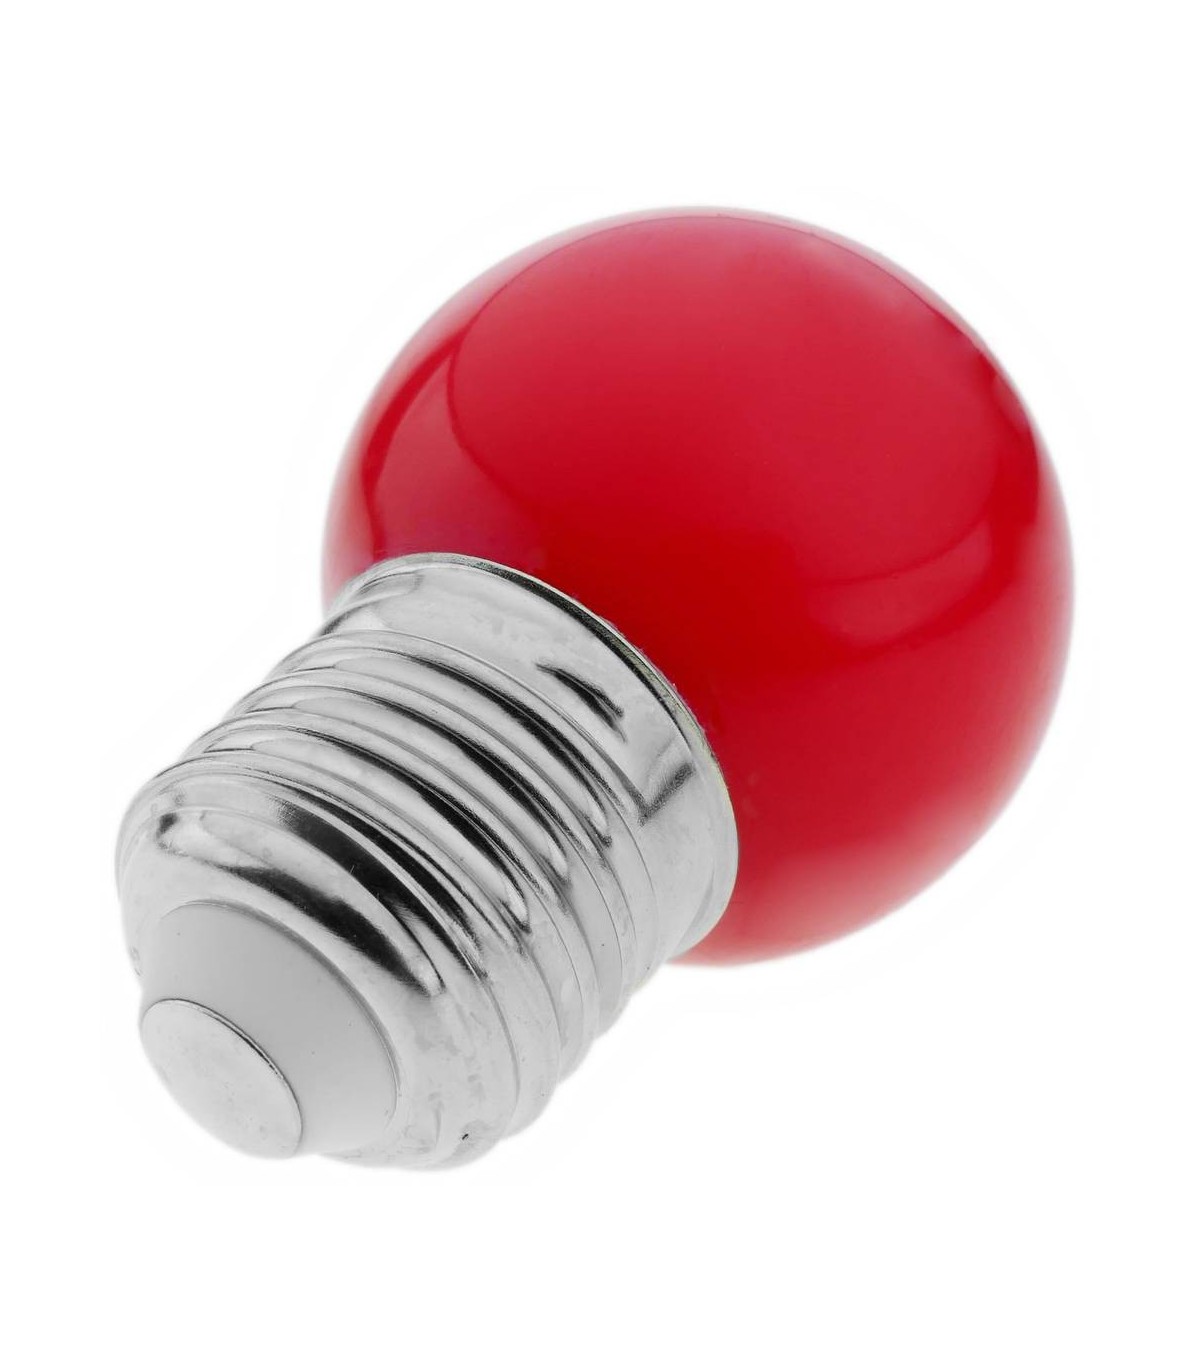 Ampoule LED E27 sphérique G45 1W couleur Rouge pour guirlandes